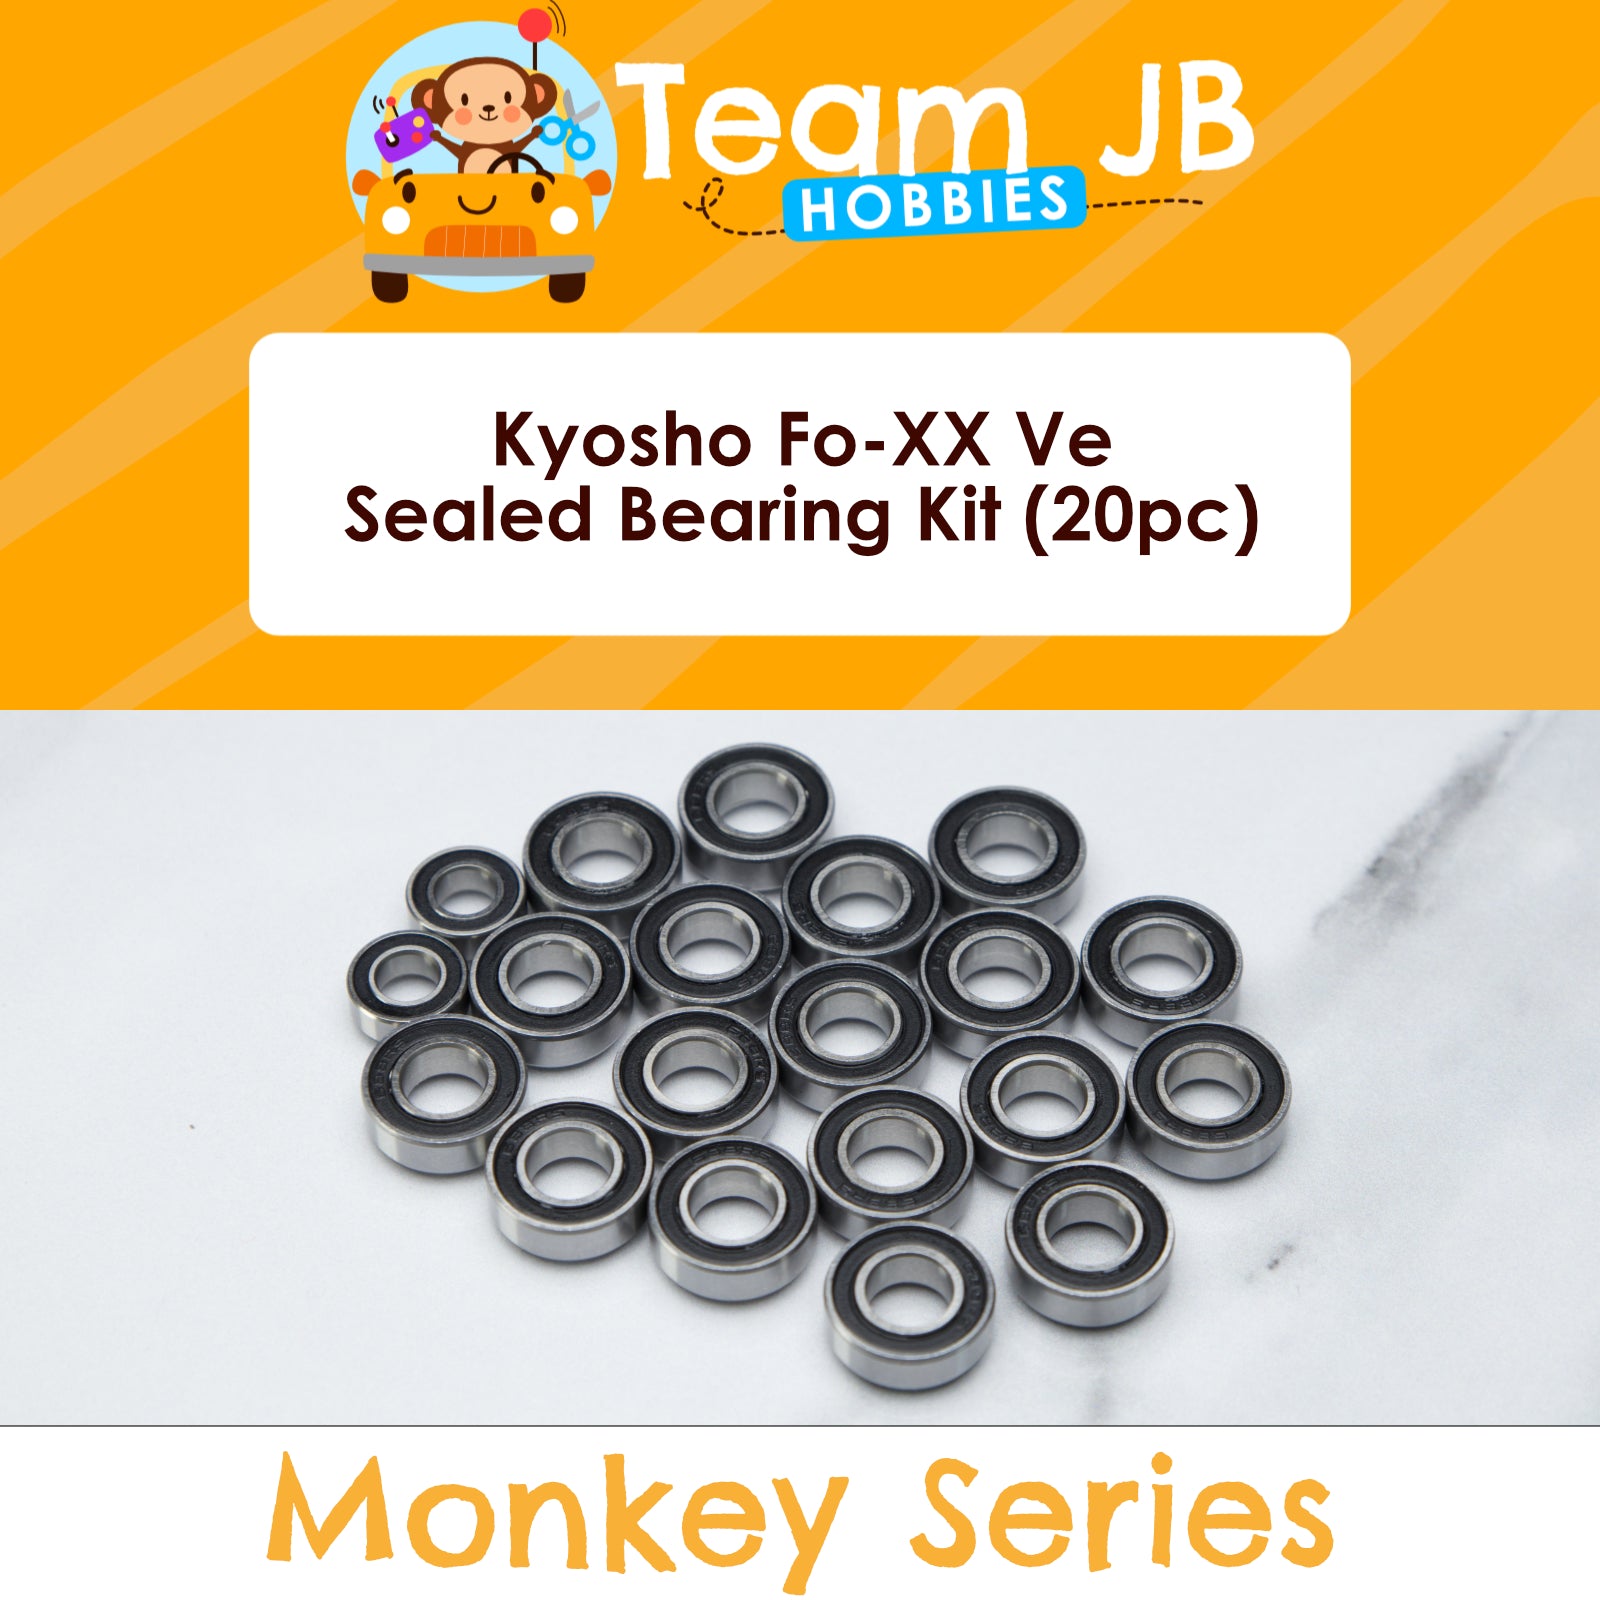 Kyosho Fo-XX Ve - Sealed Bearing Kit